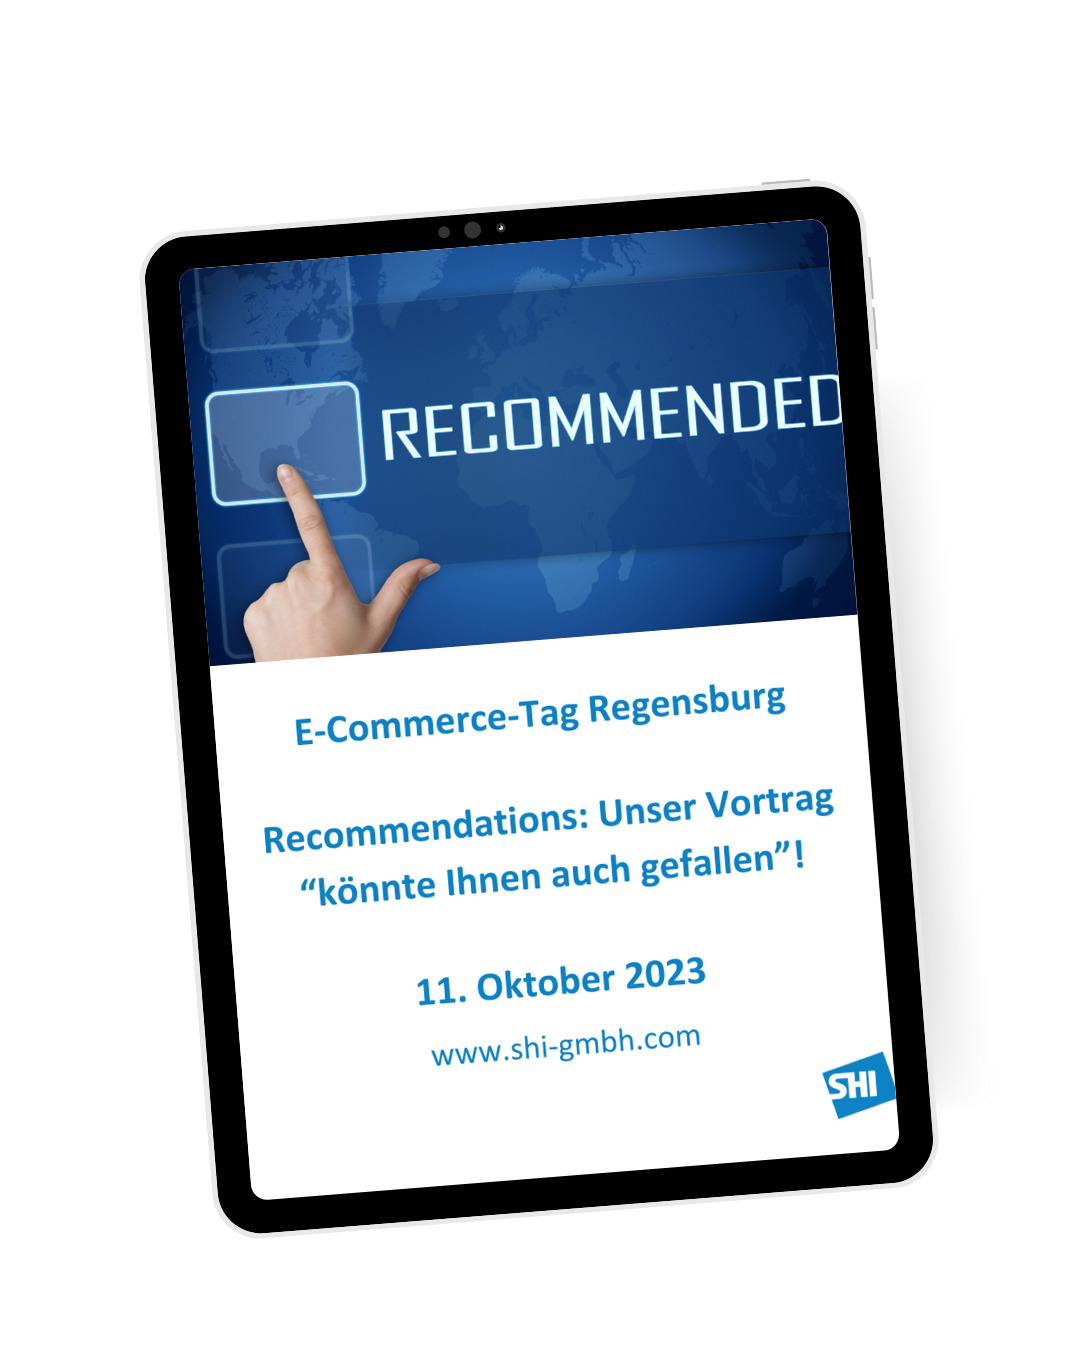 E-Commerce-Tag Regensburg 2023: Vortrag zum Thema Recommendations